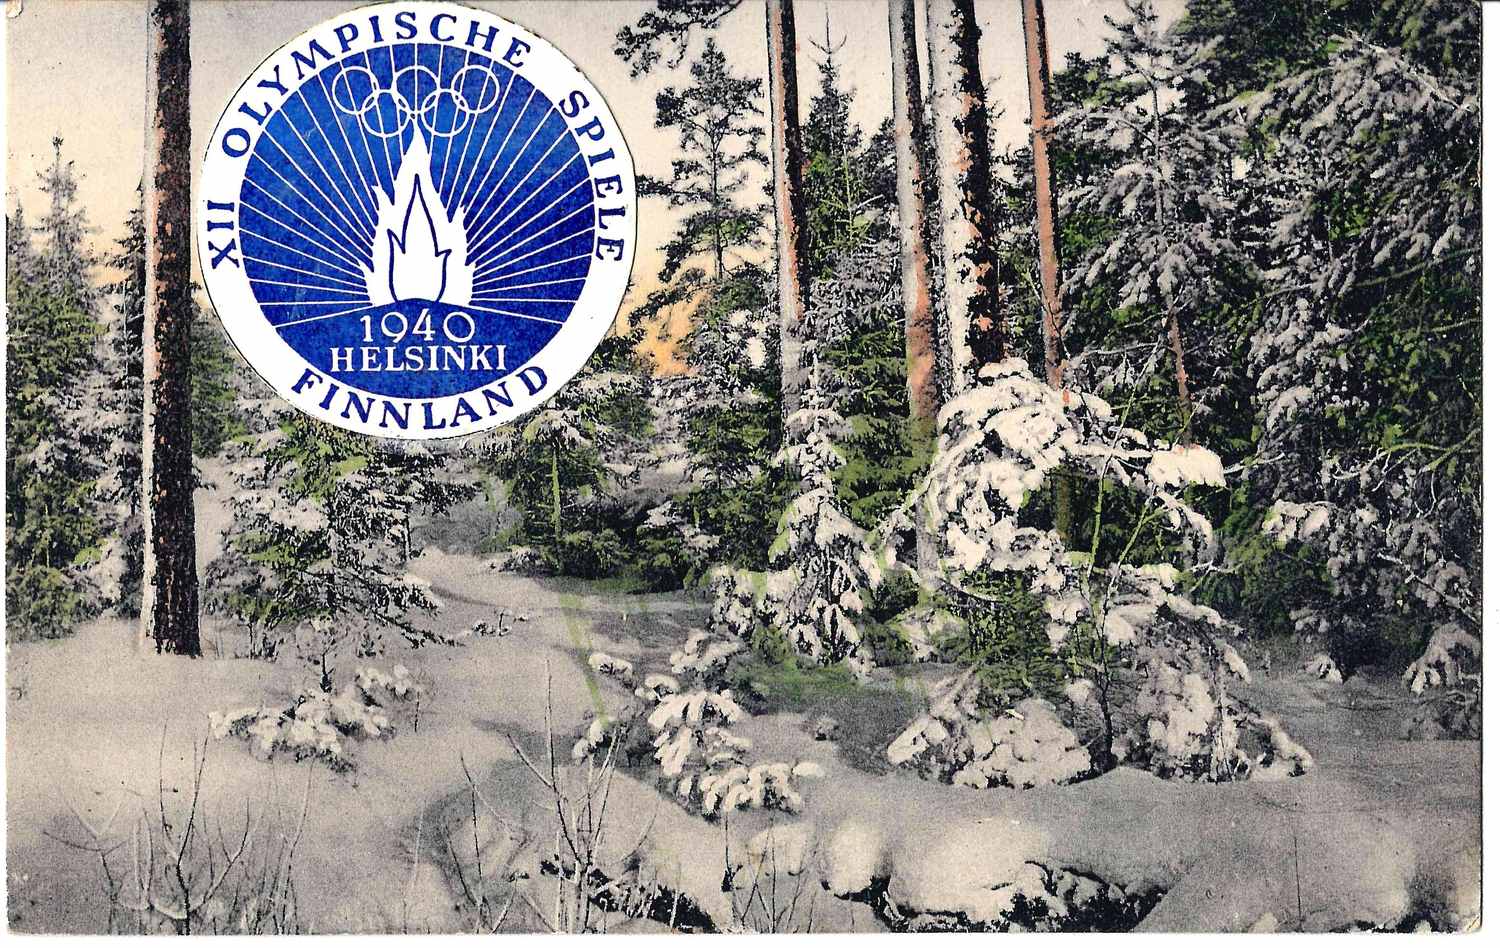 Финляндия. Почтовая карточка с виньеткой «XII Олимпийские игры. Хельсинки. Финляндия. 1940», прошедшая почту (отправлено из Хельсинки 29 марта 1940 года, специальное гашение «XII Olympia»).